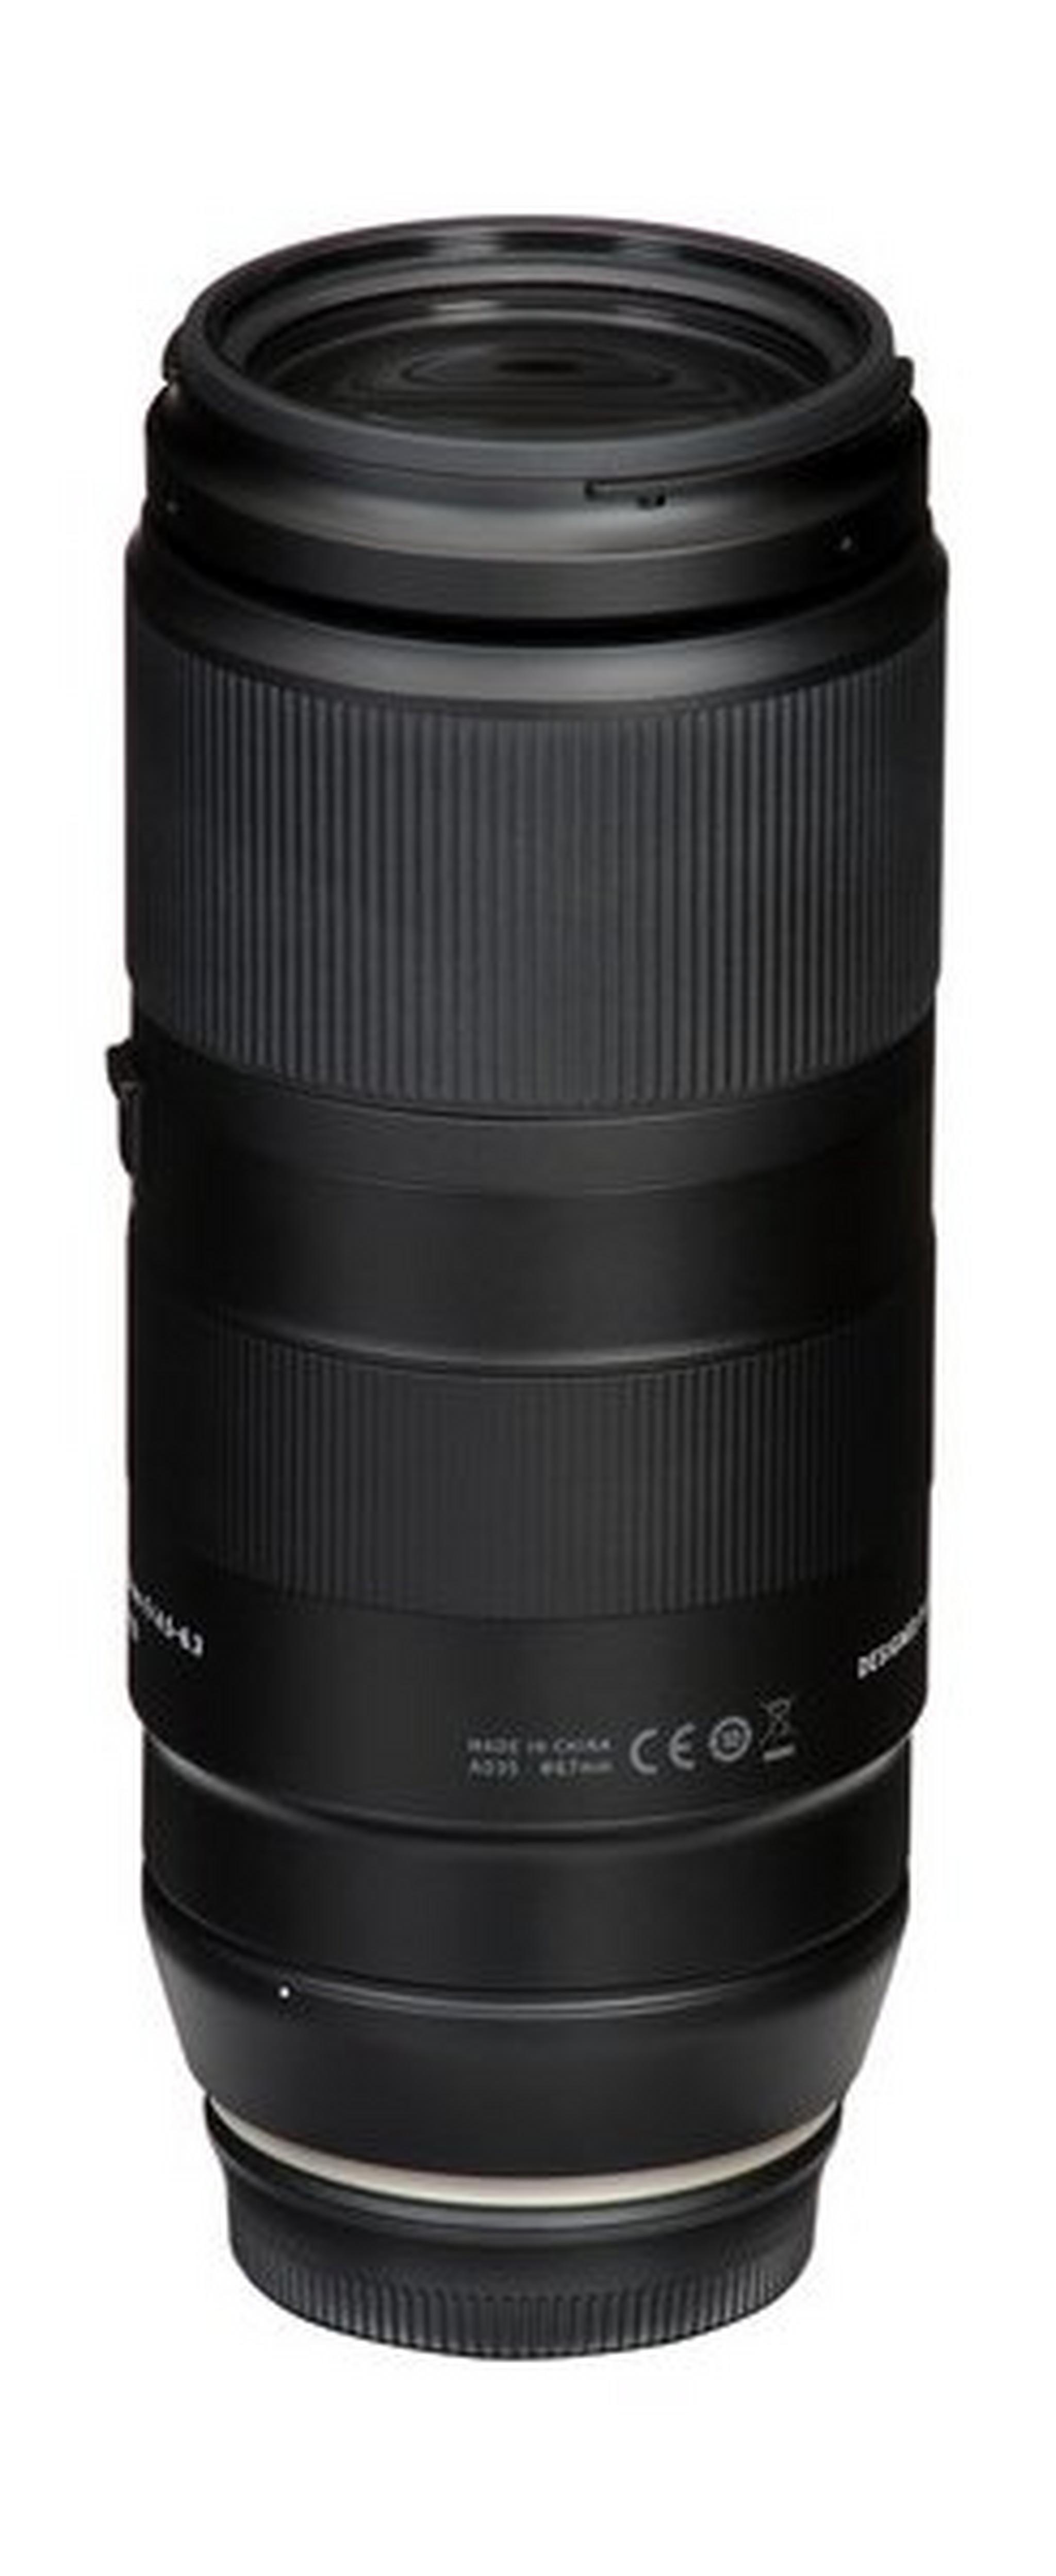 عدسة تامرون (A035E) ١٠٠ - ٤٠٠ ملم بفتحة قياس إف / ٤,٥ - ٦,٣ دي آي مع تقنية تعويض الاهتزاز (VC) لكاميرا كانون - أسود